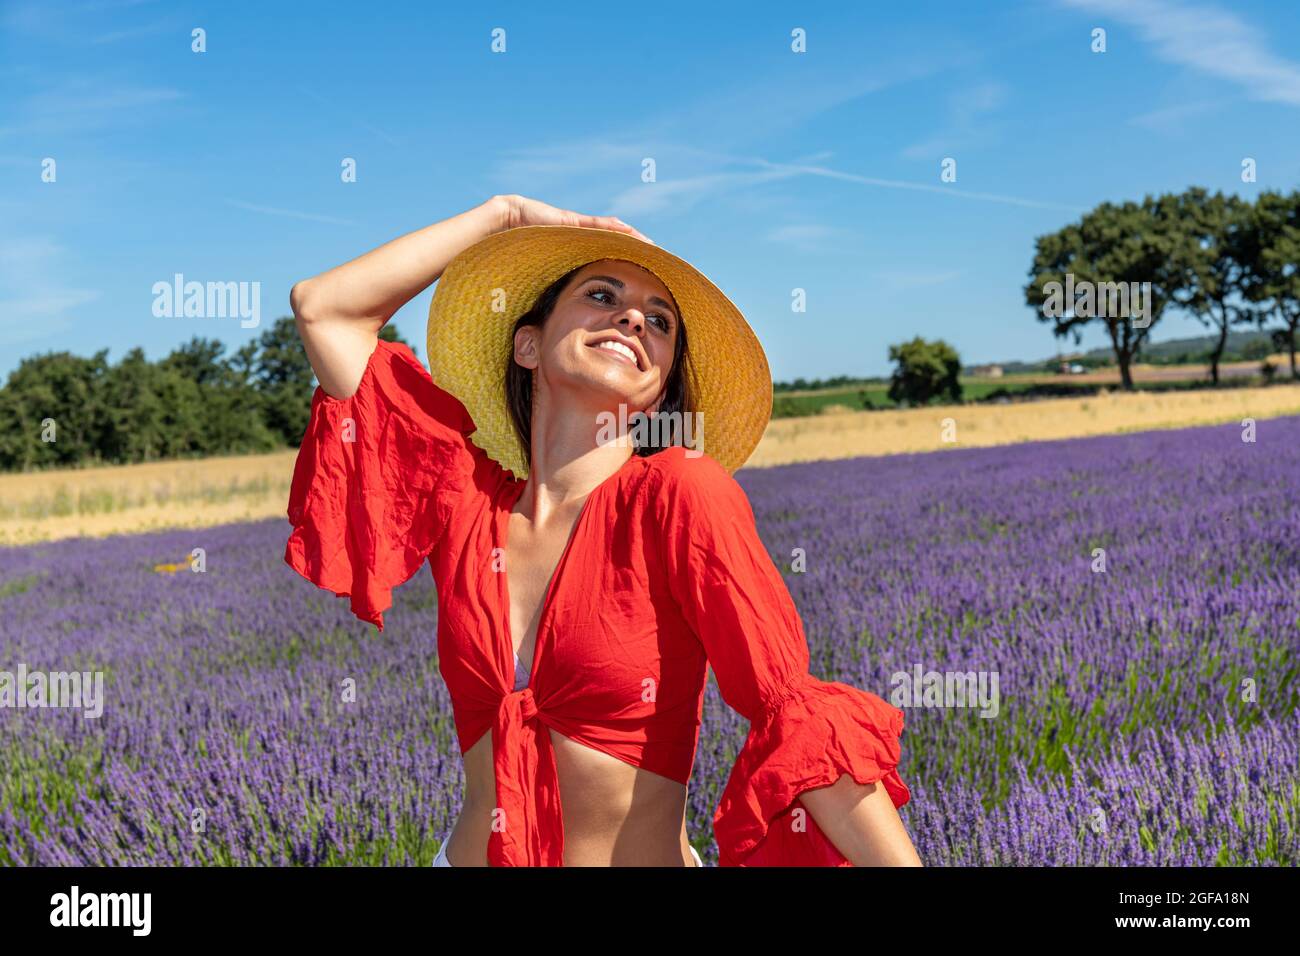 Porträt einer lächelnden jungen Frau, die mit ihrem Strohhut in einem Lavendelfeld spielt. Konzept von Wohlbefinden und Liebe zur Natur. Stockfoto